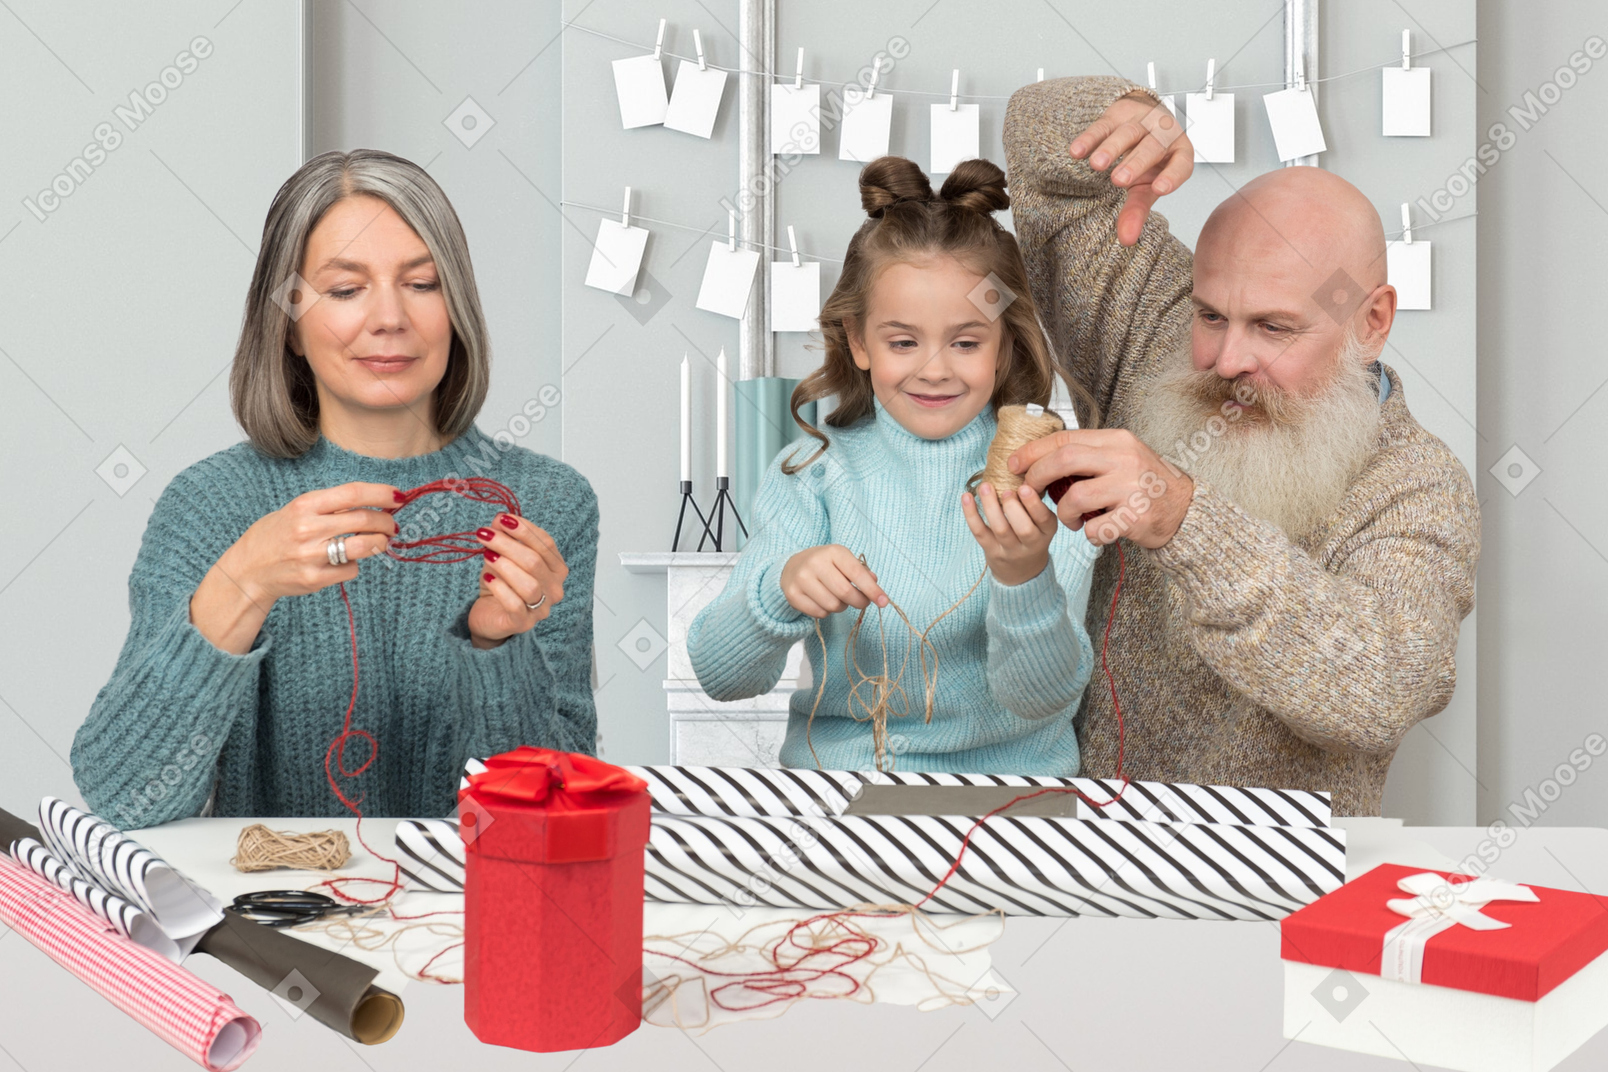 그들의 손녀와 함께 크리스마스를 준비하는 조부모